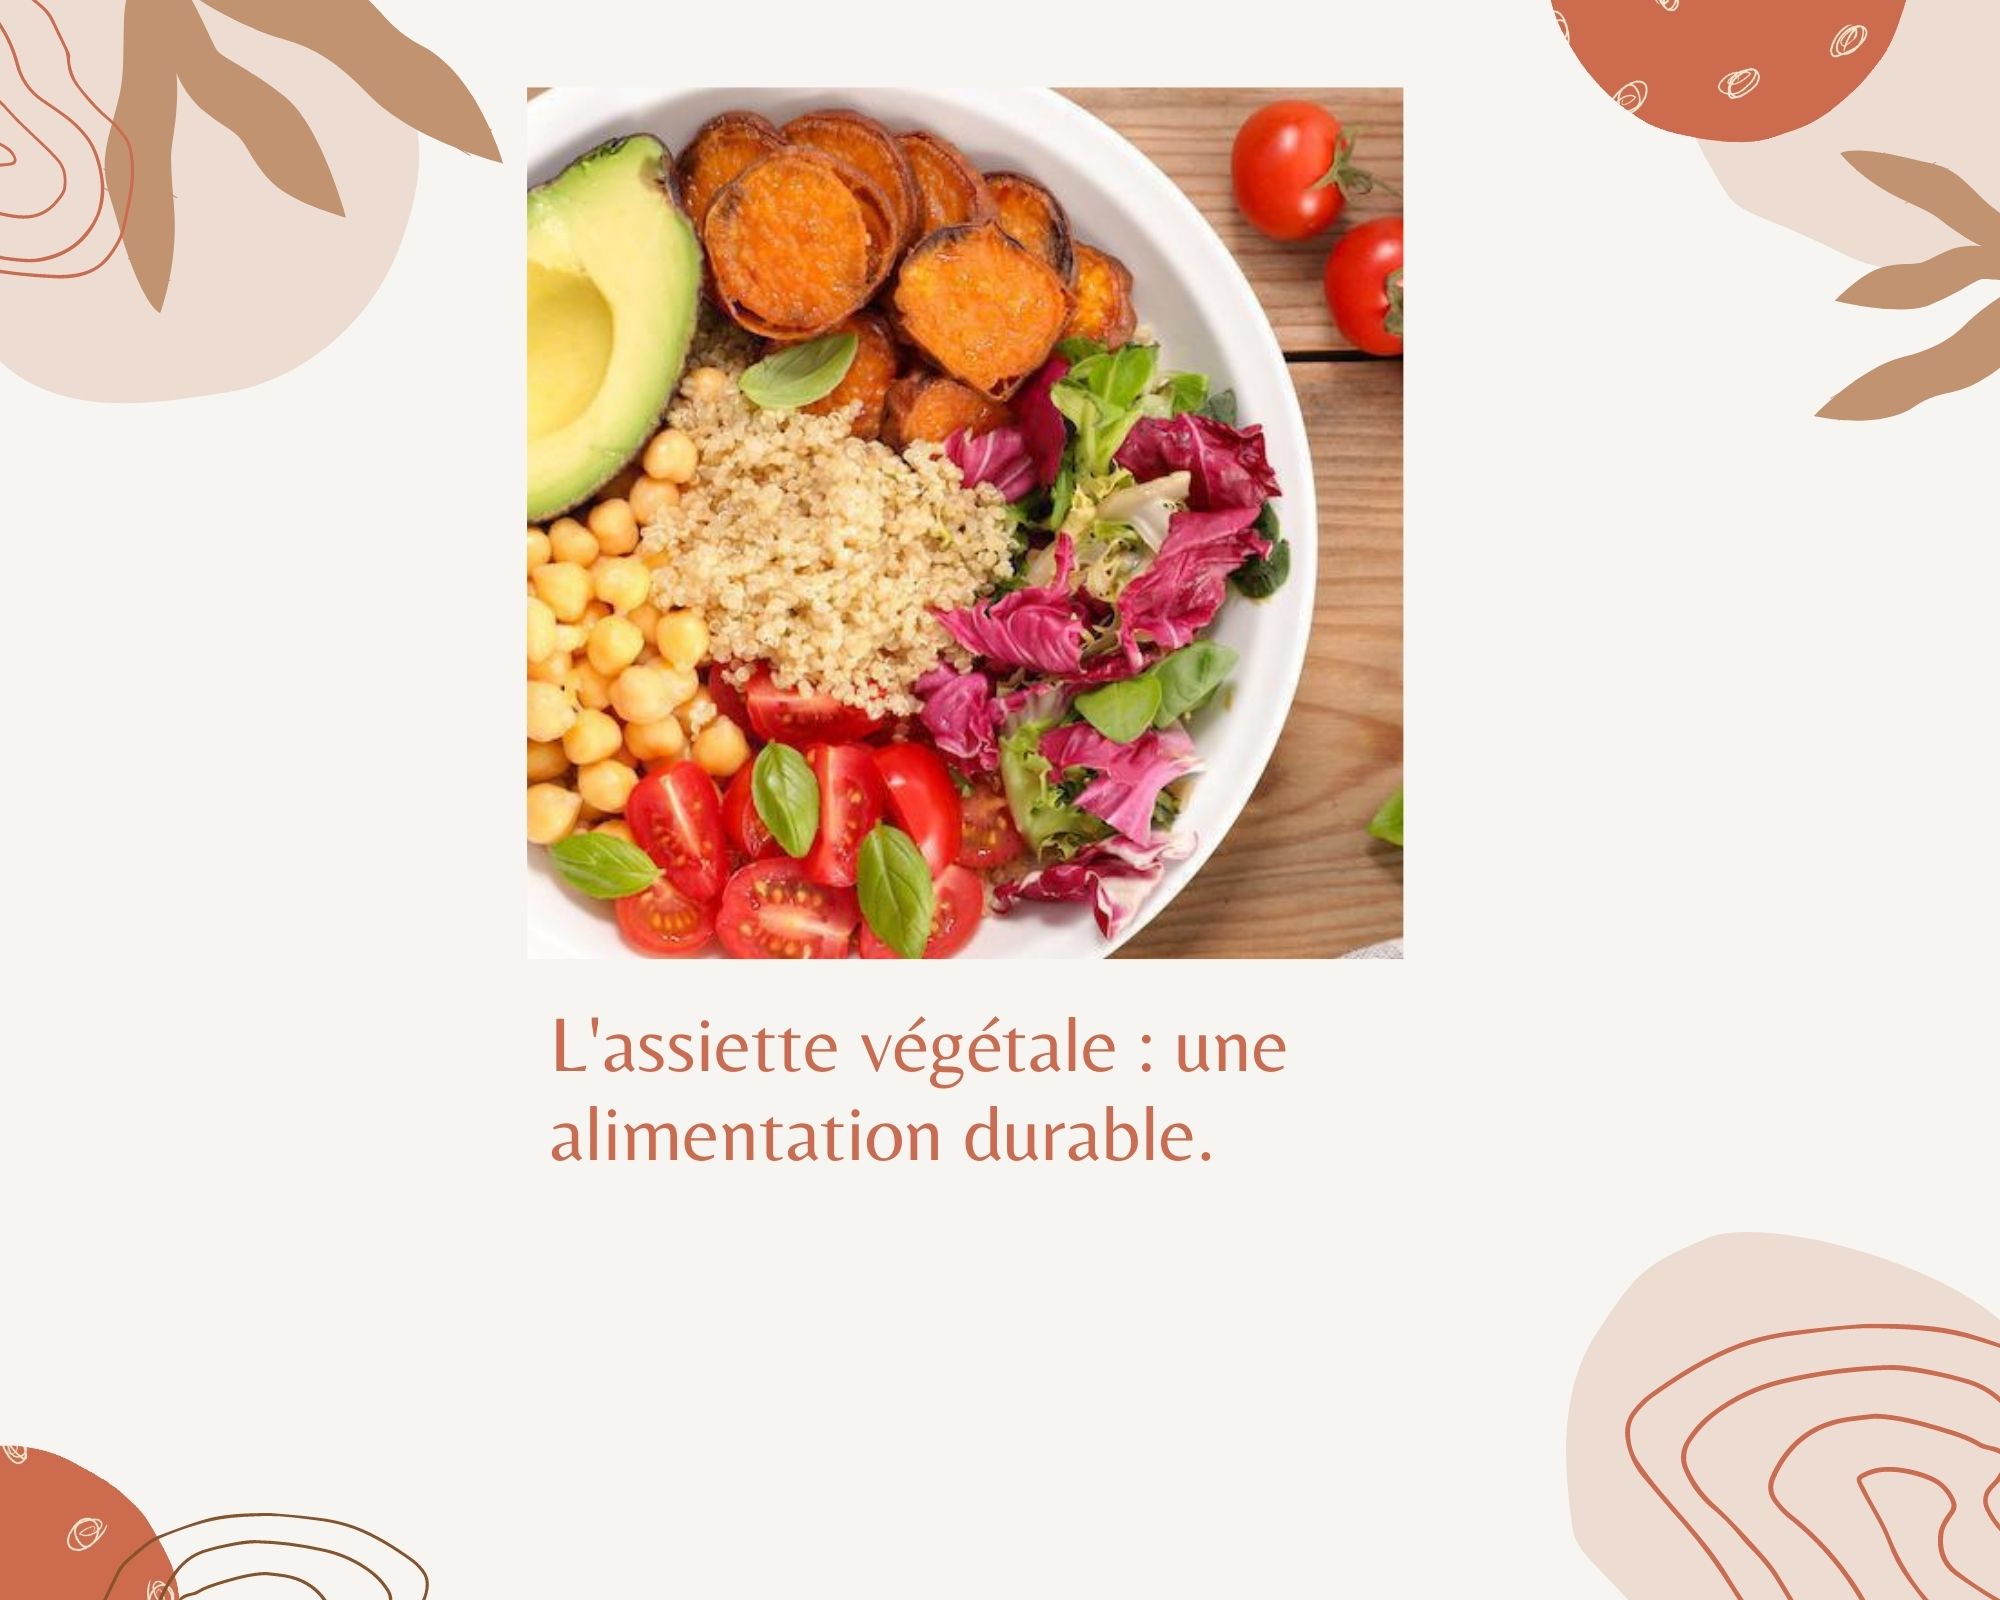 L'assiette végétale : une alimentation durable. - Les Menus Services